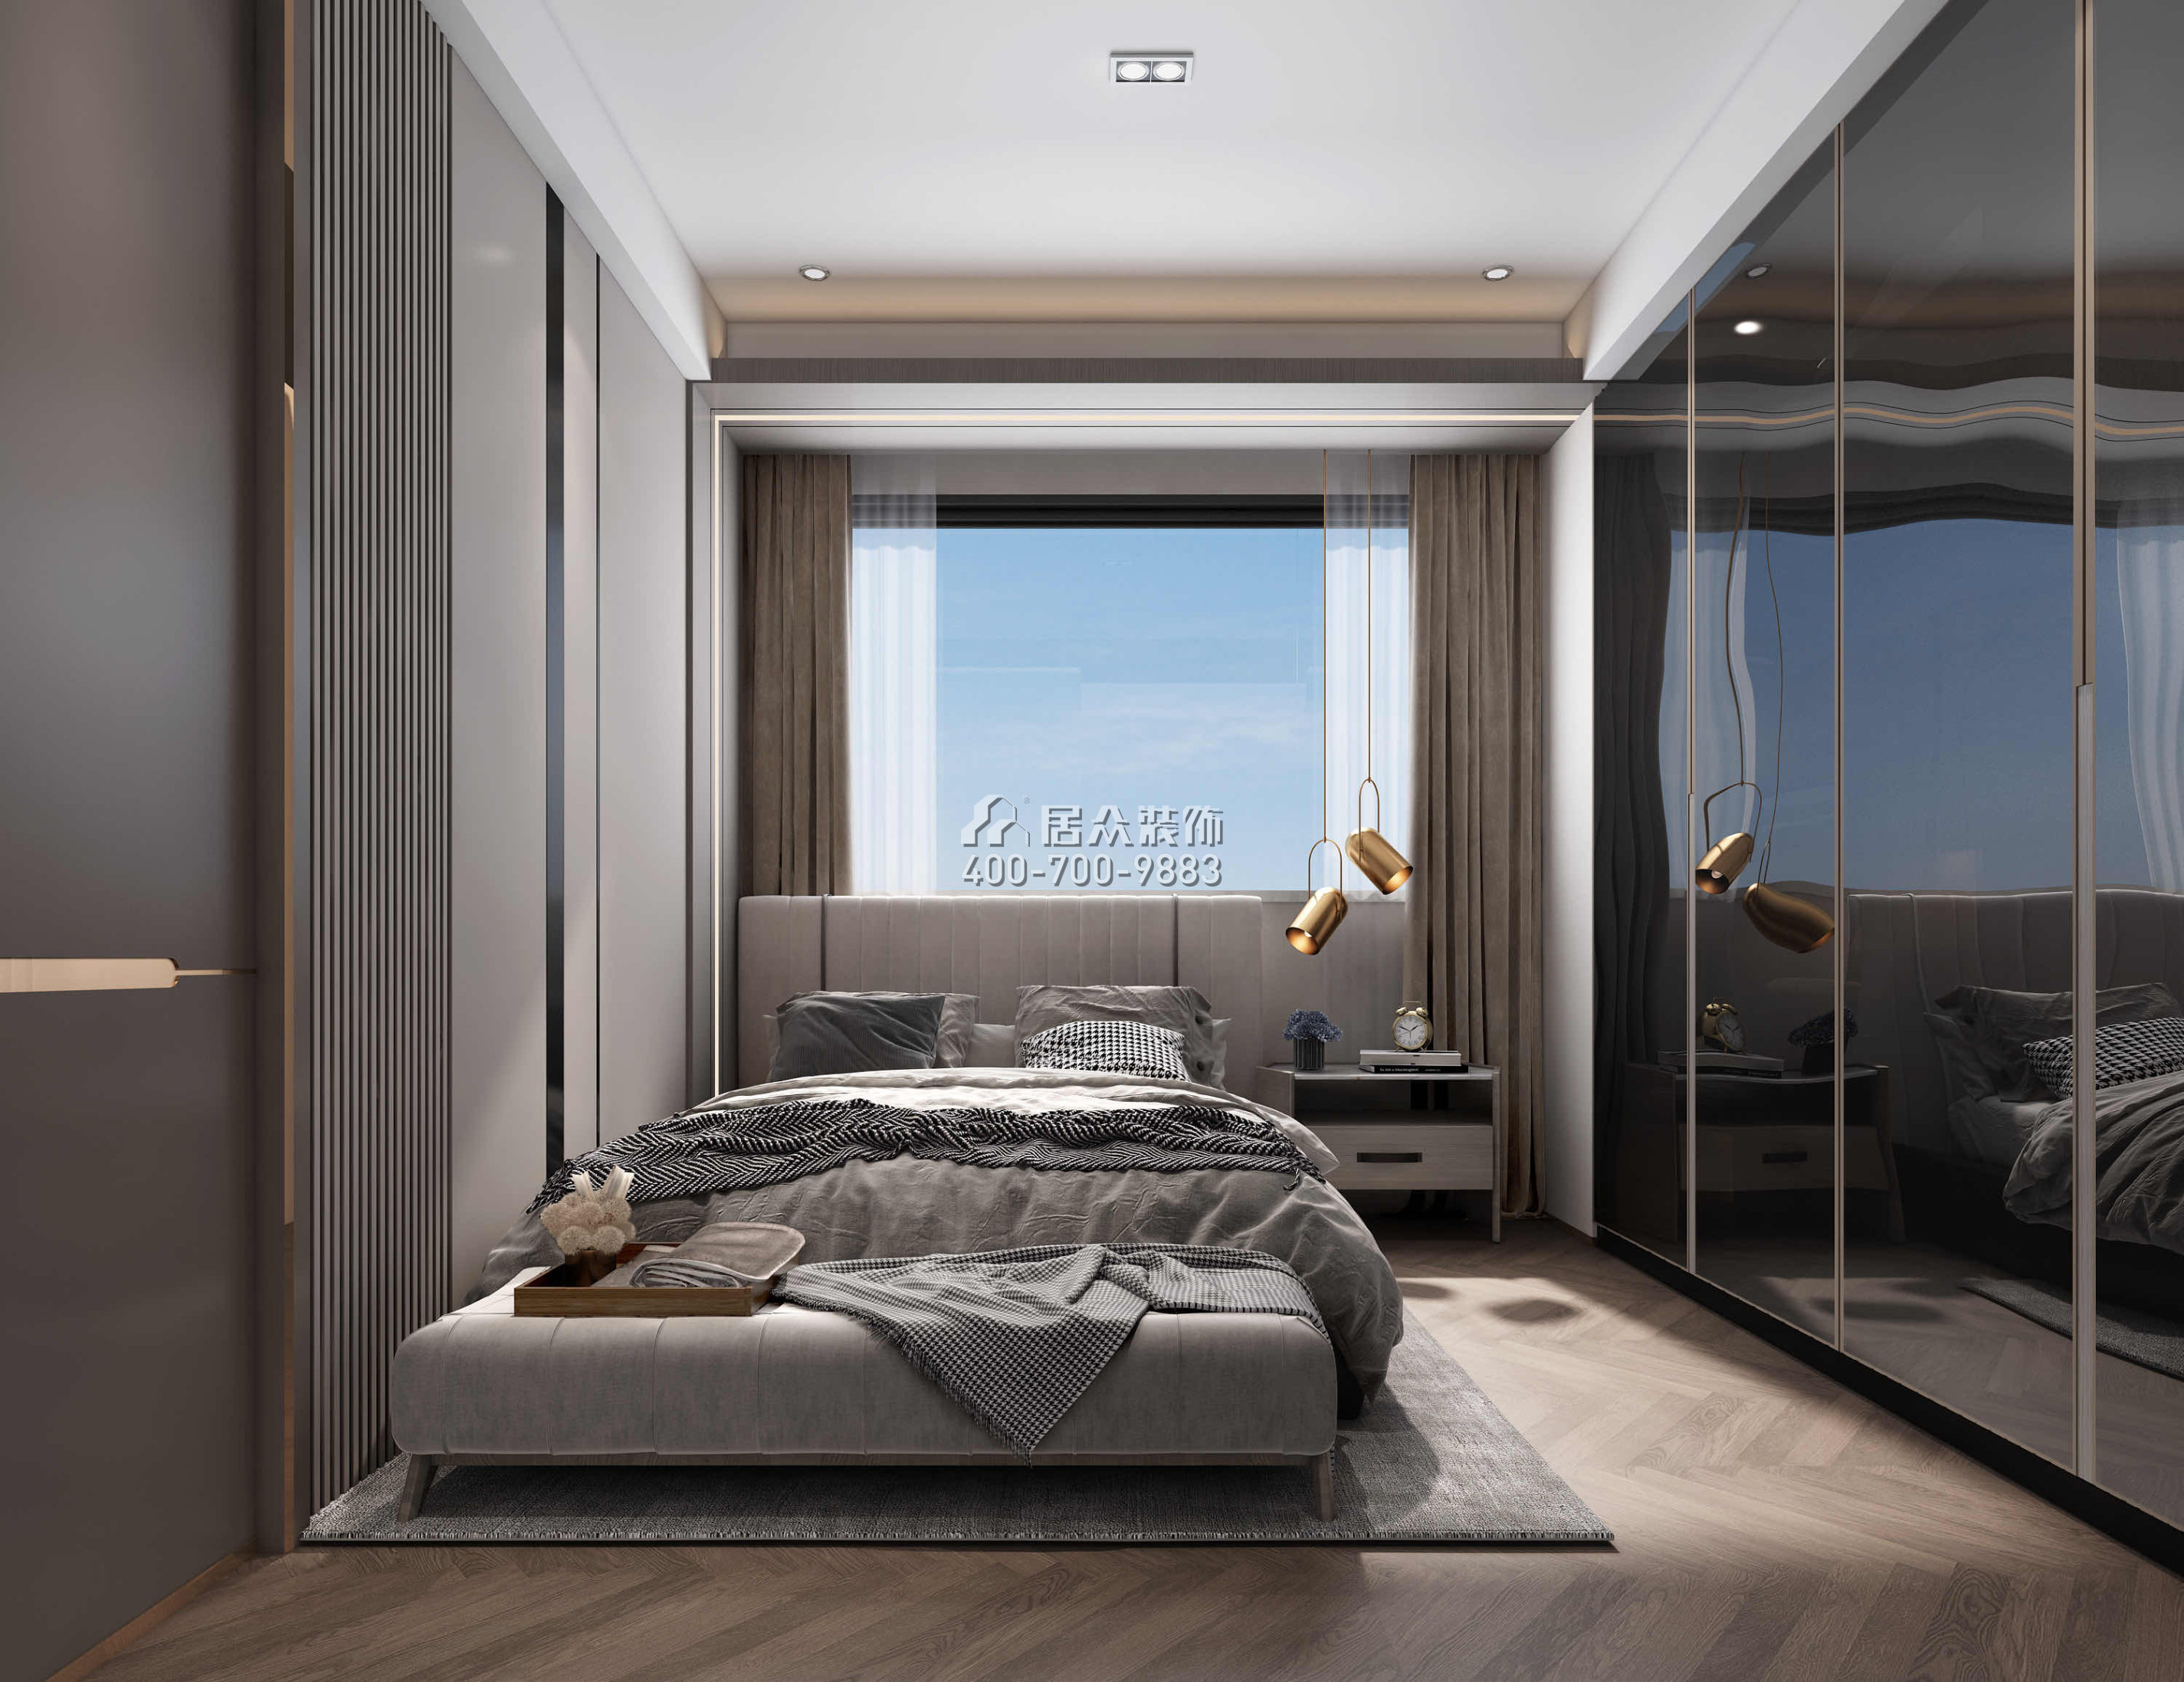 天鹅堡370平方米现代简约风格平层户型卧室装修效果图